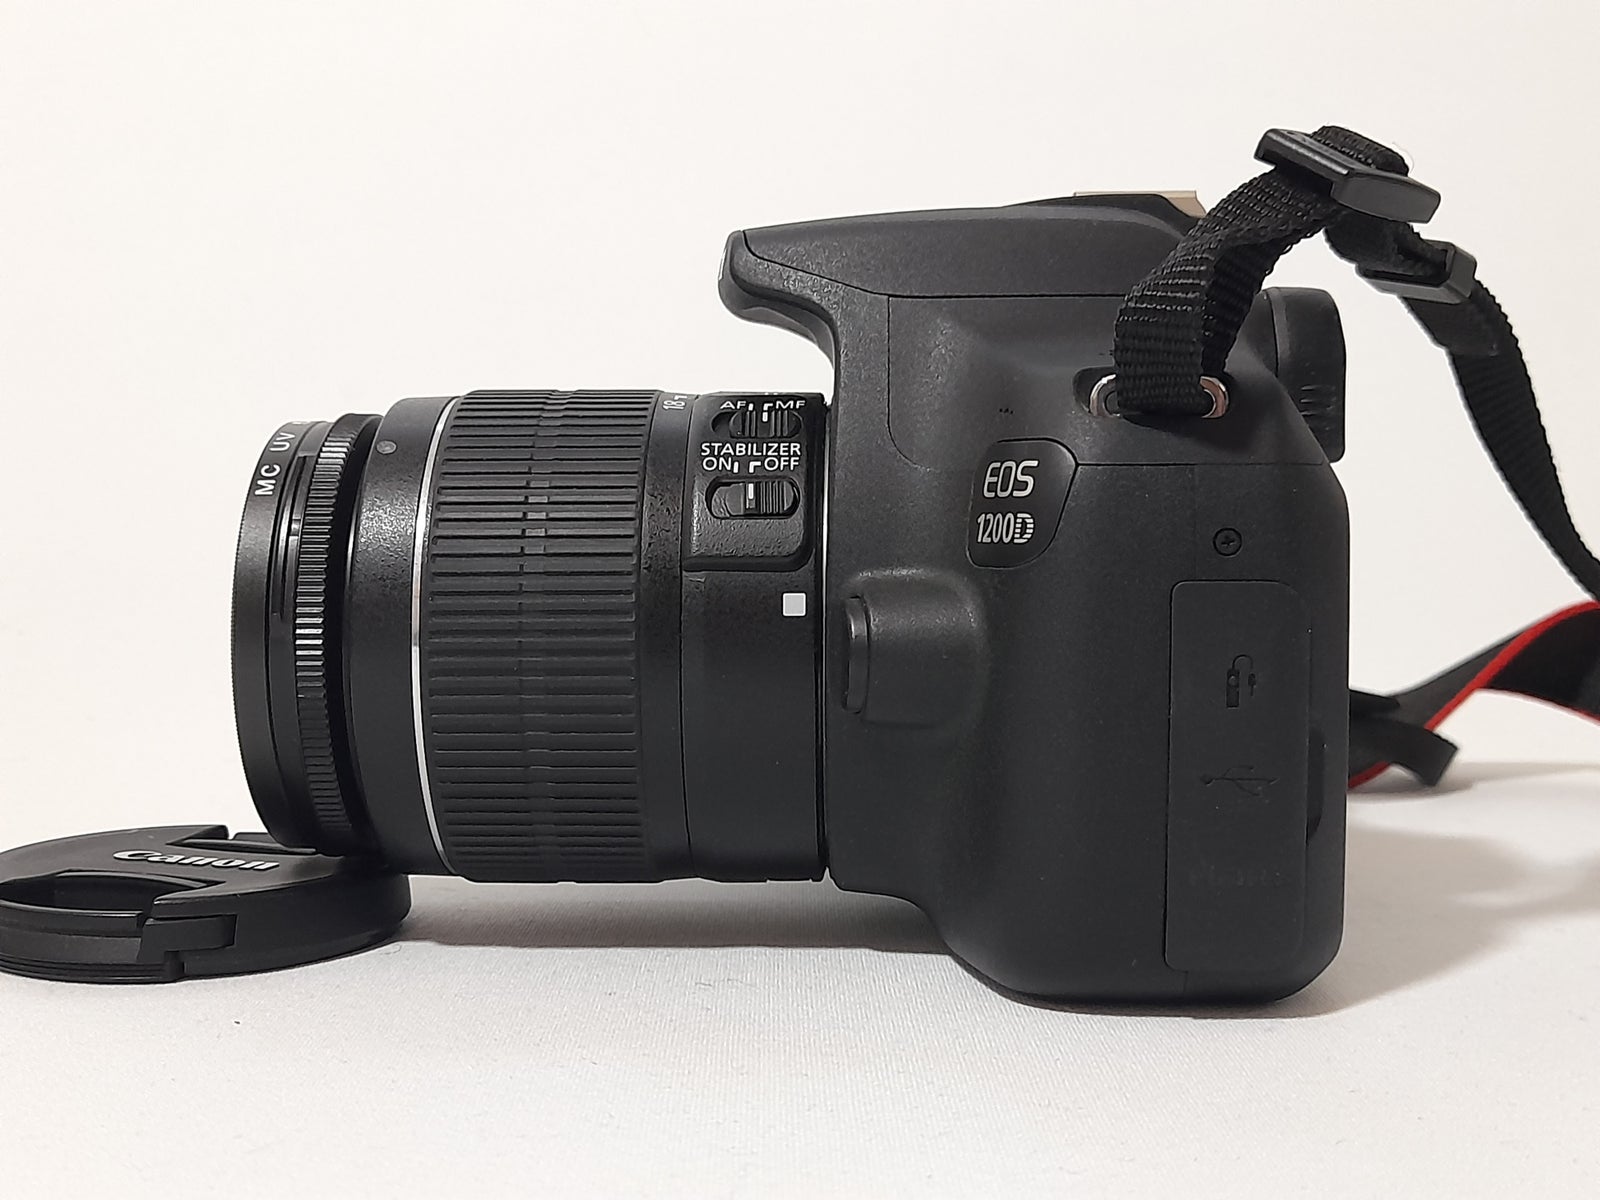 Canon, Canon EOS 1200D, 18 megapixels